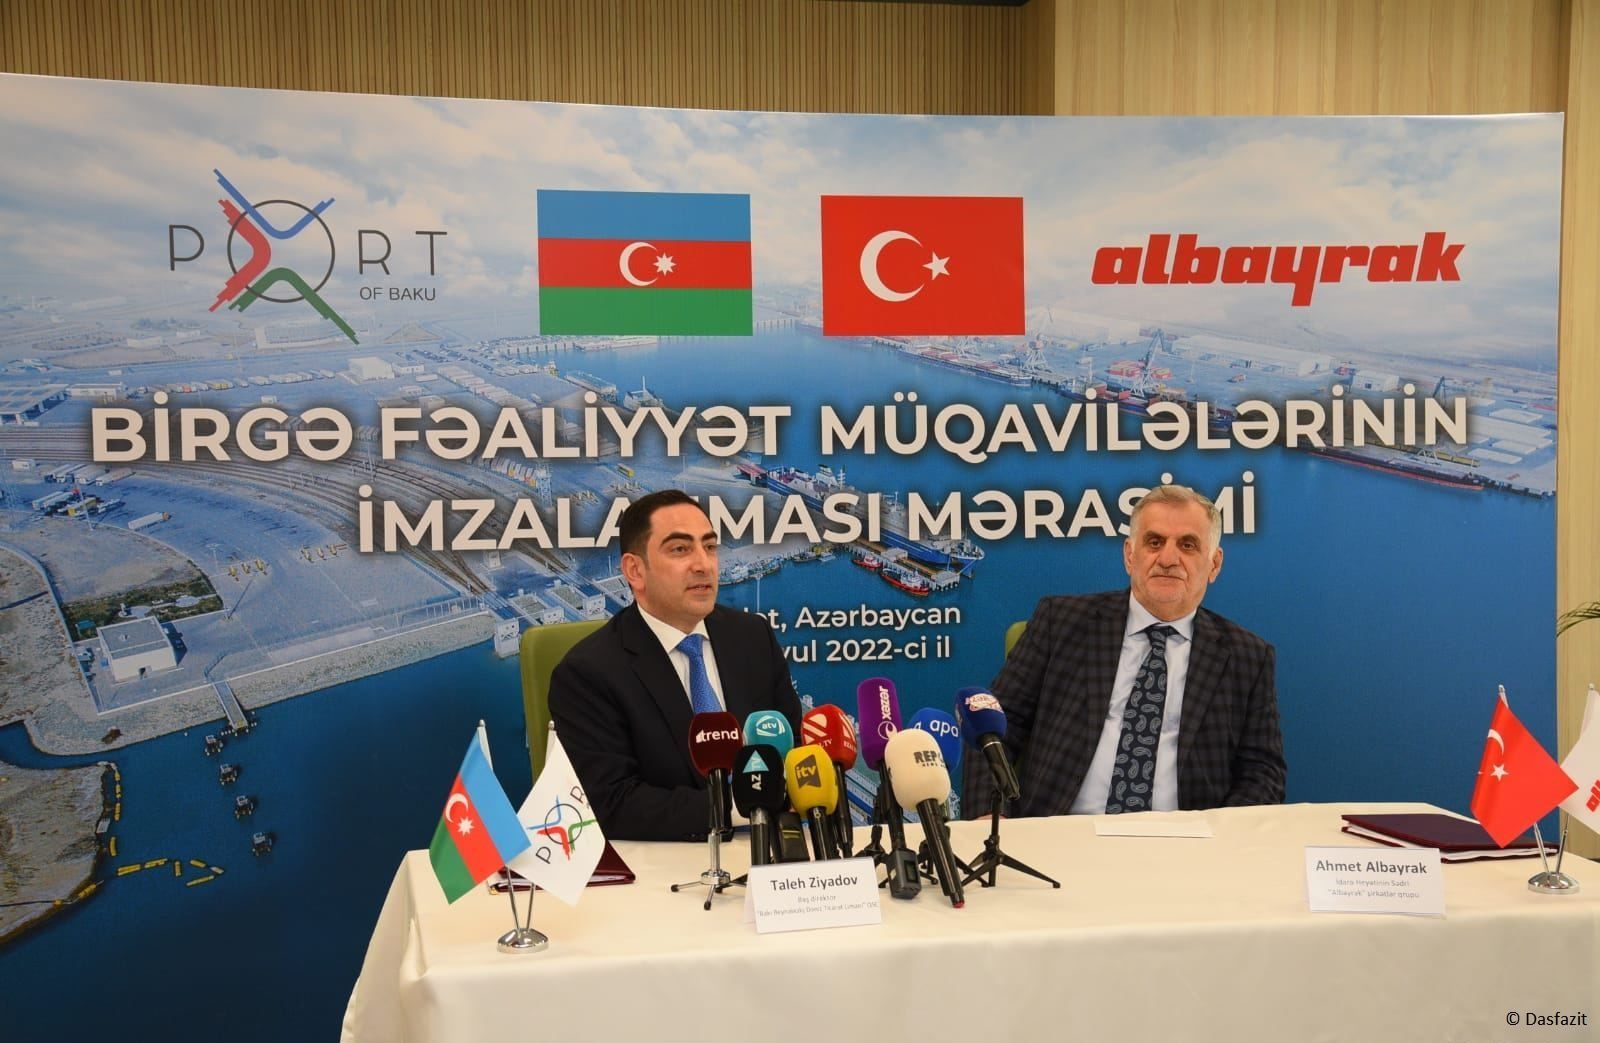 Geplanter Termin für die Inbetriebnahme des "Ro-Ro"-Terminals im Hafen von Baku bekannt gegeben